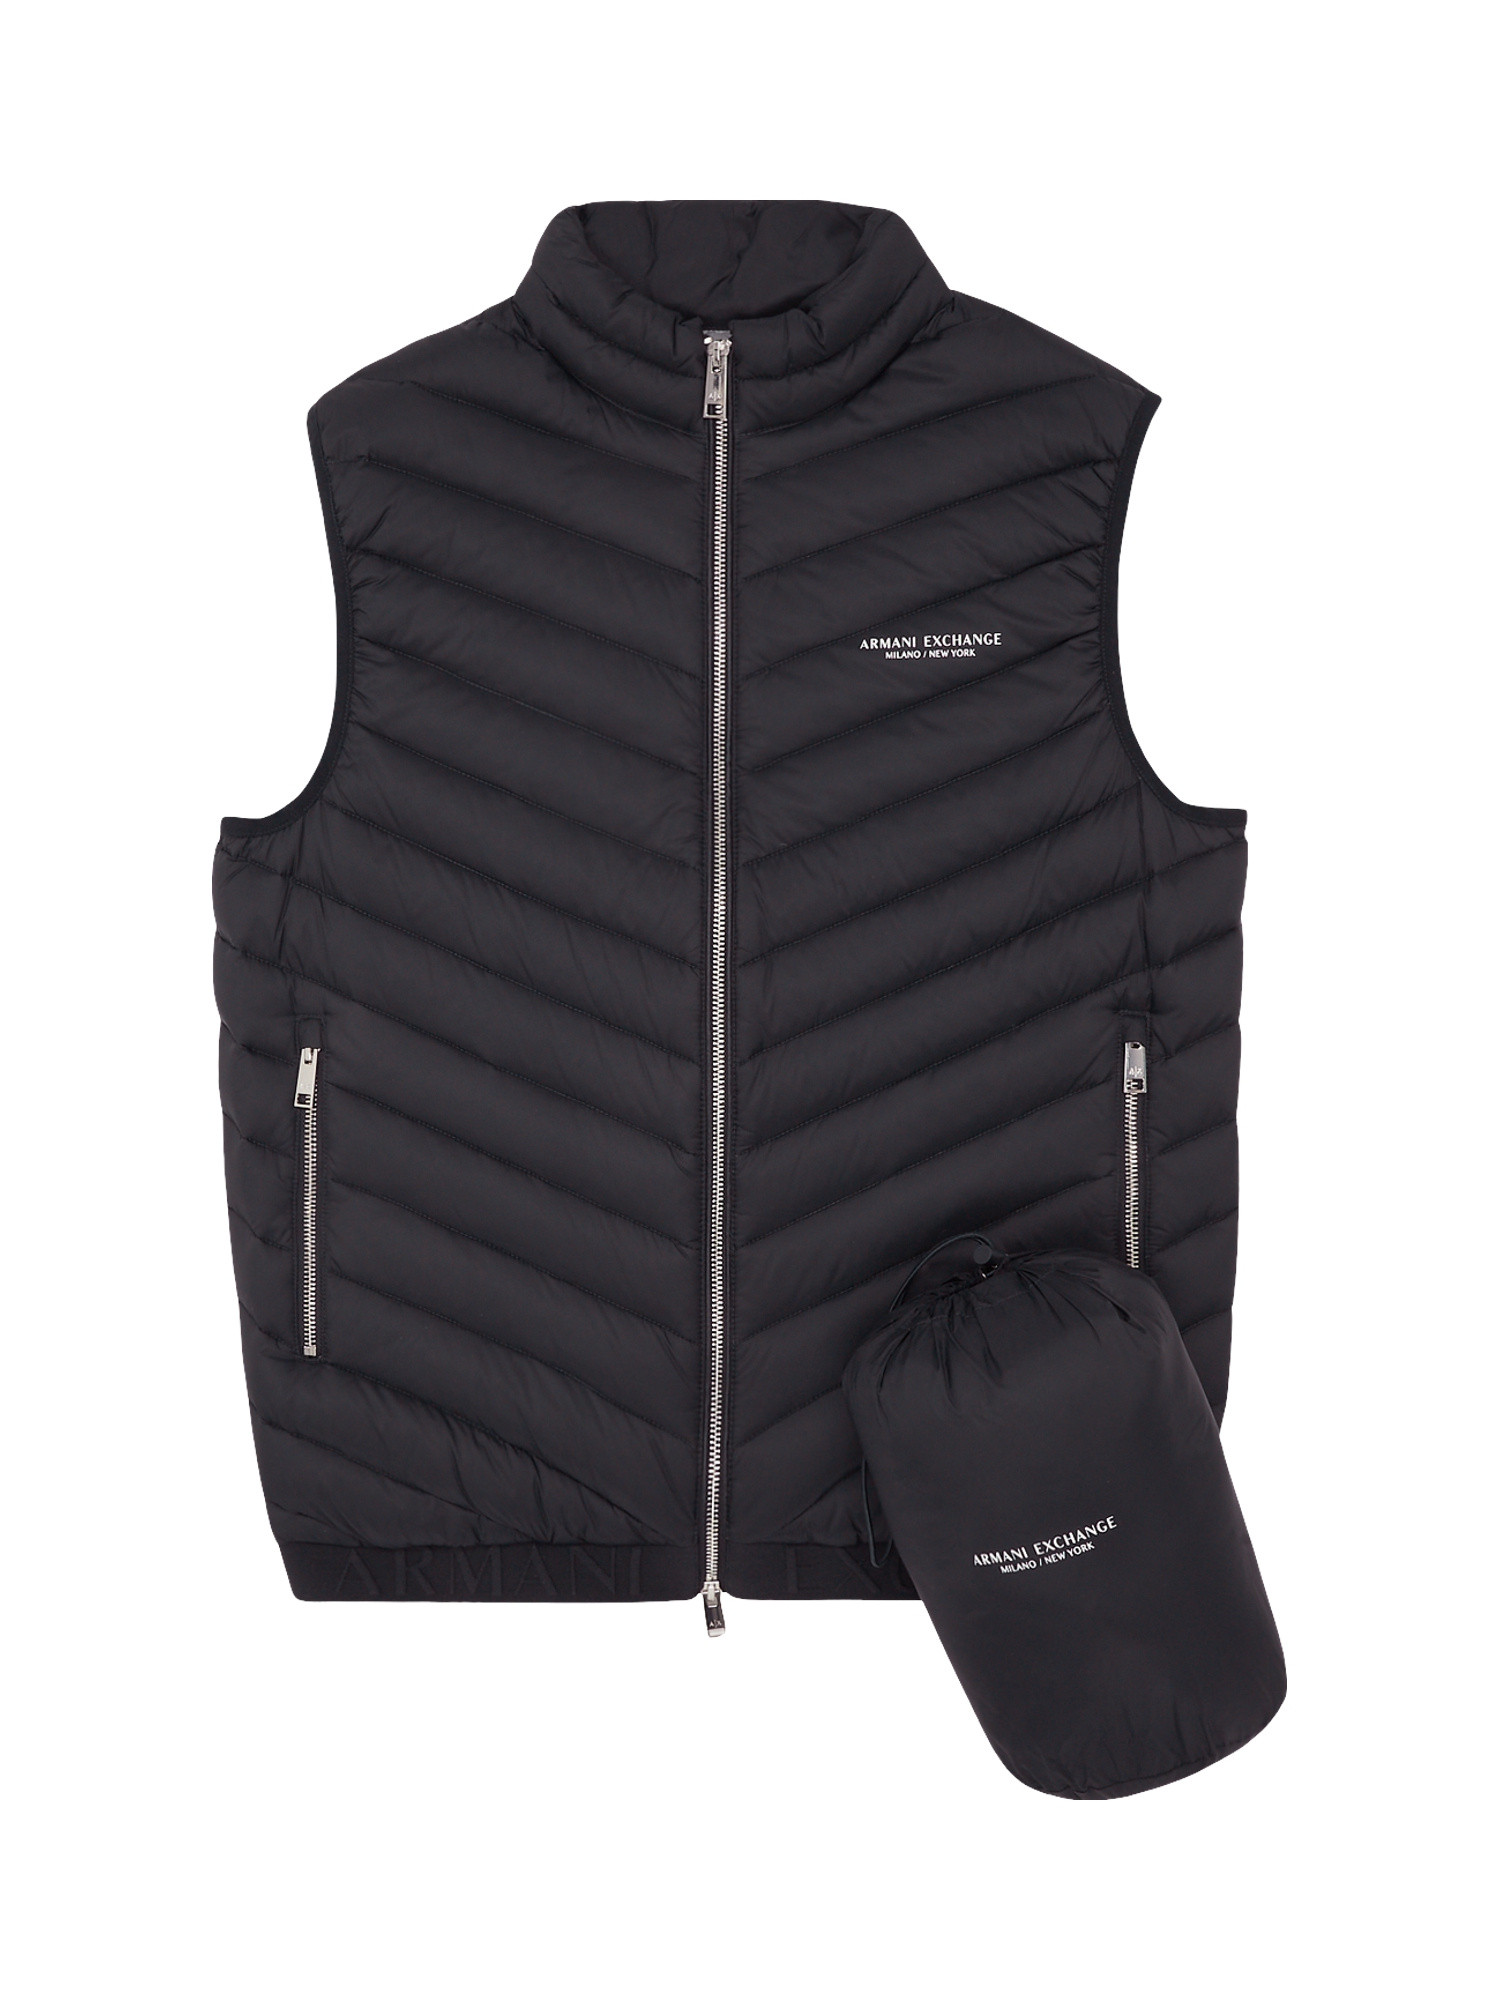 Armani Exchange - Padded sleeveless down jacket, Black, large image number 1